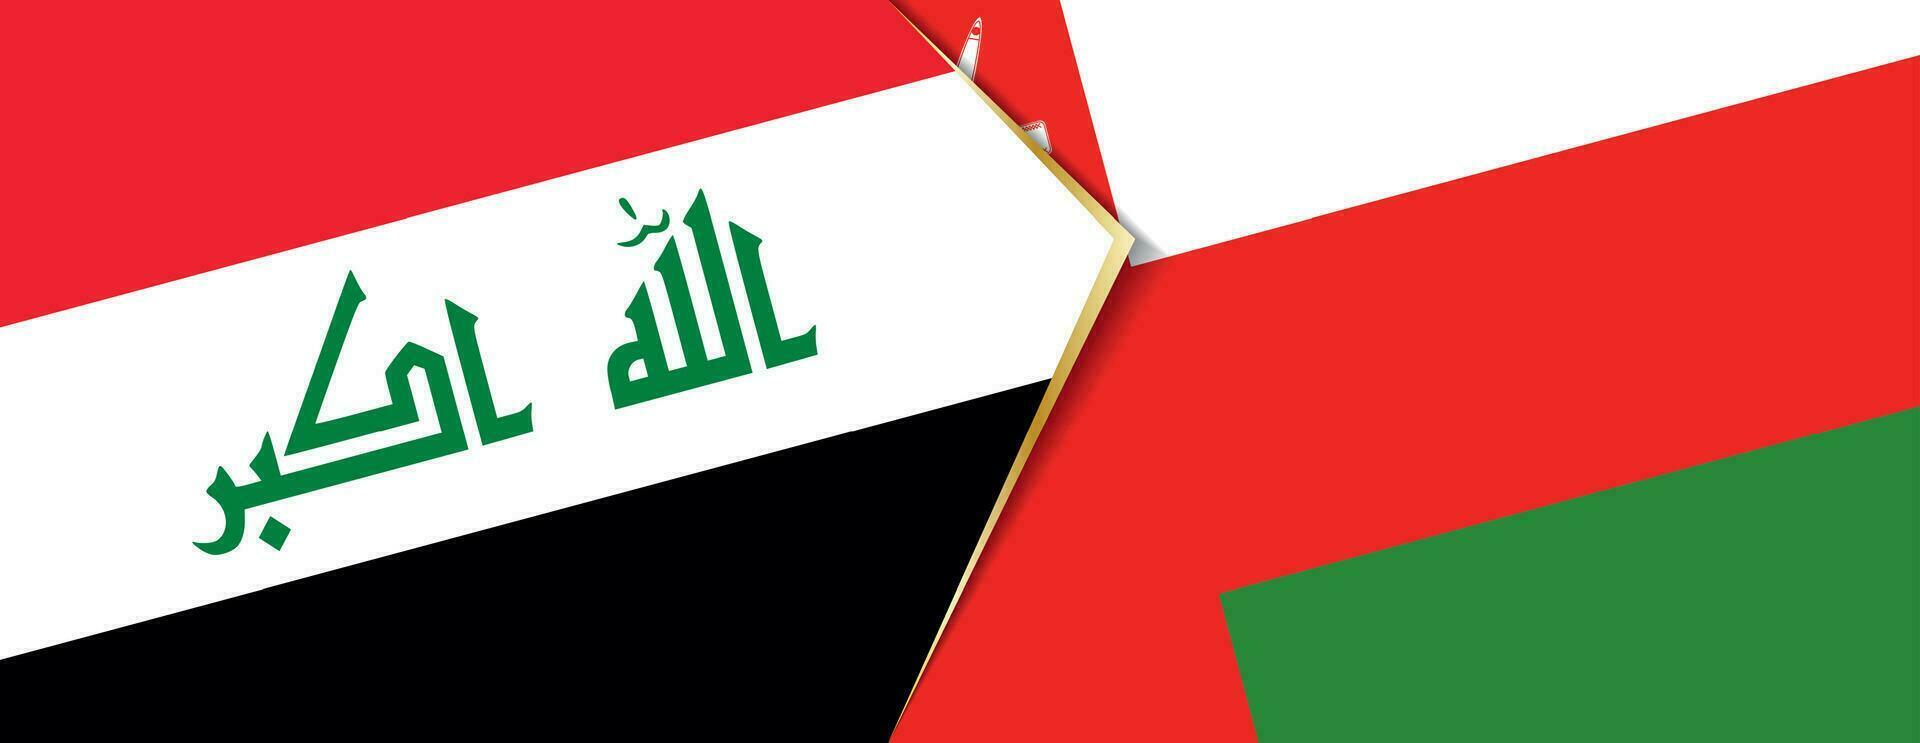 Irak y Omán banderas, dos vector banderas